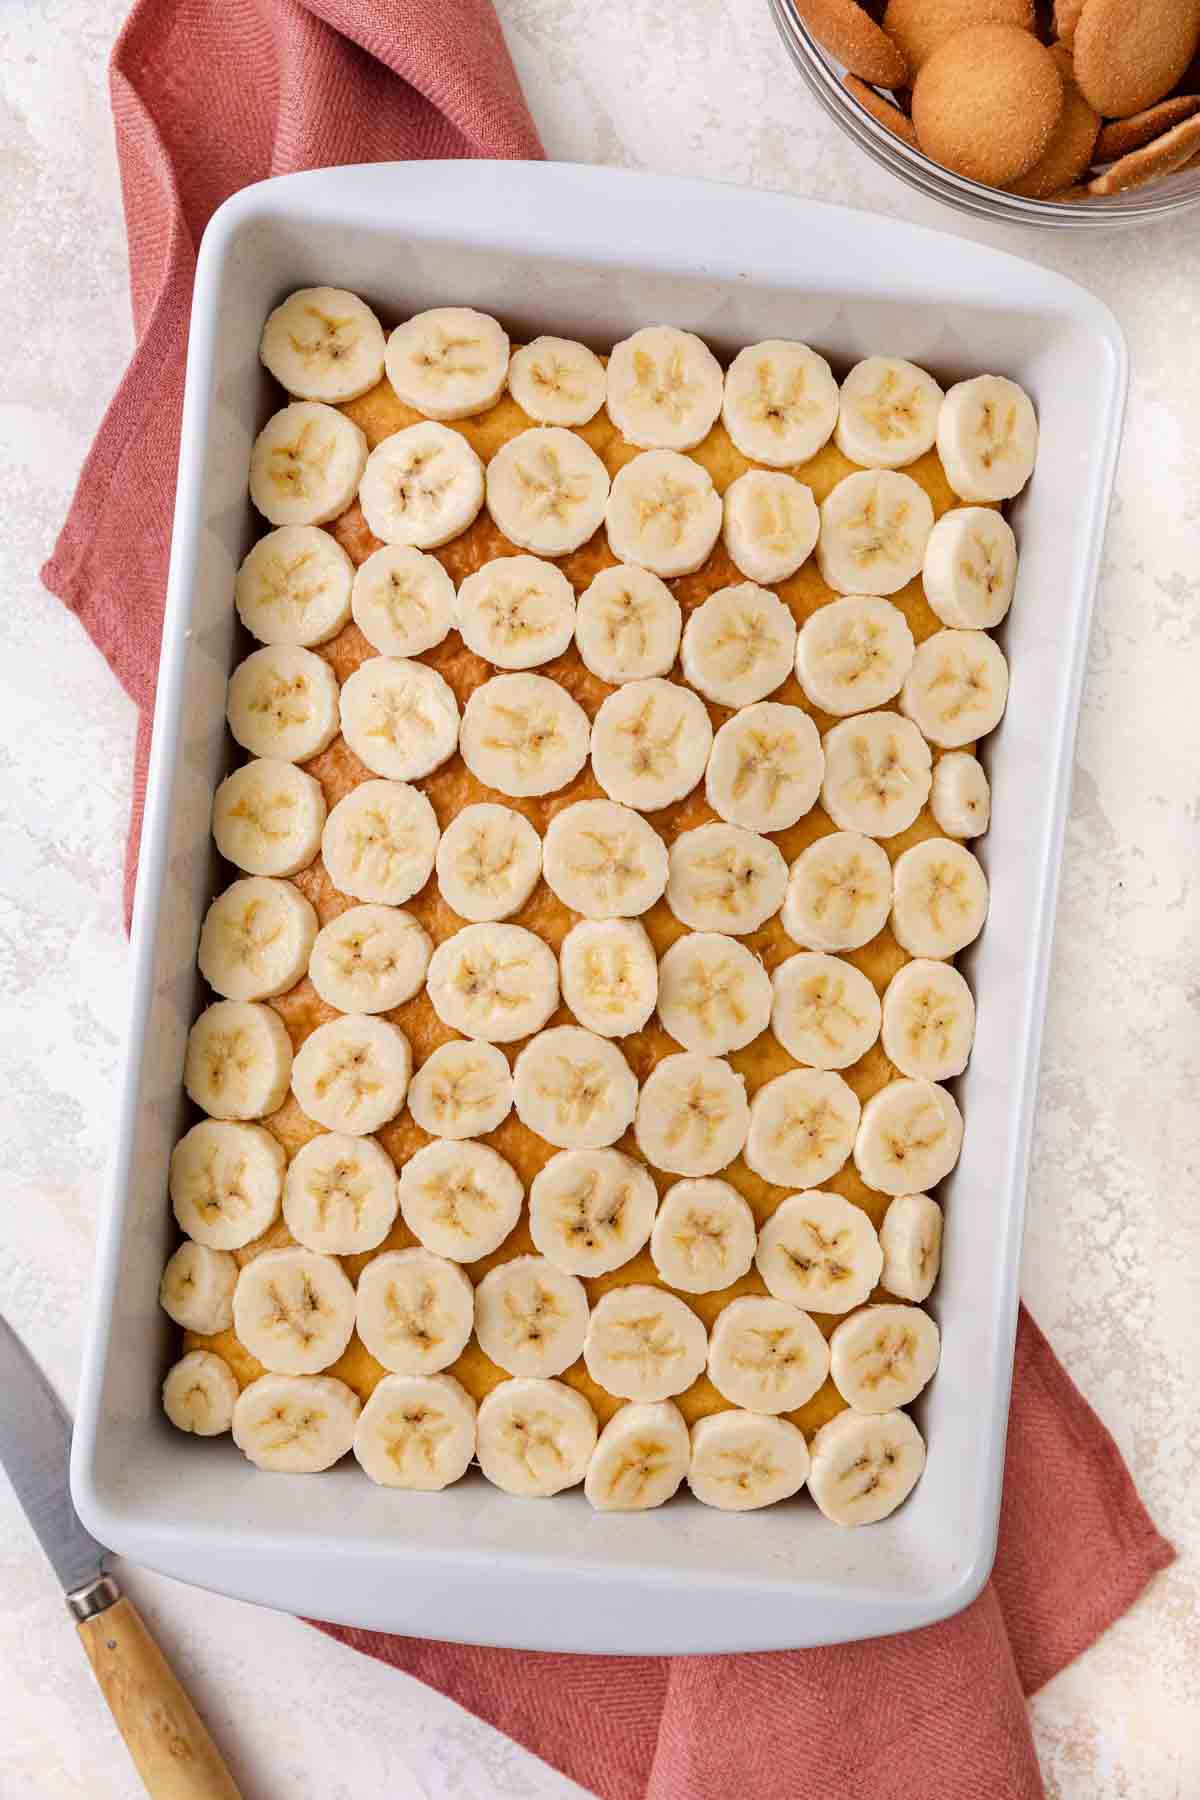 Banana Pudding Cake topped with Bananas